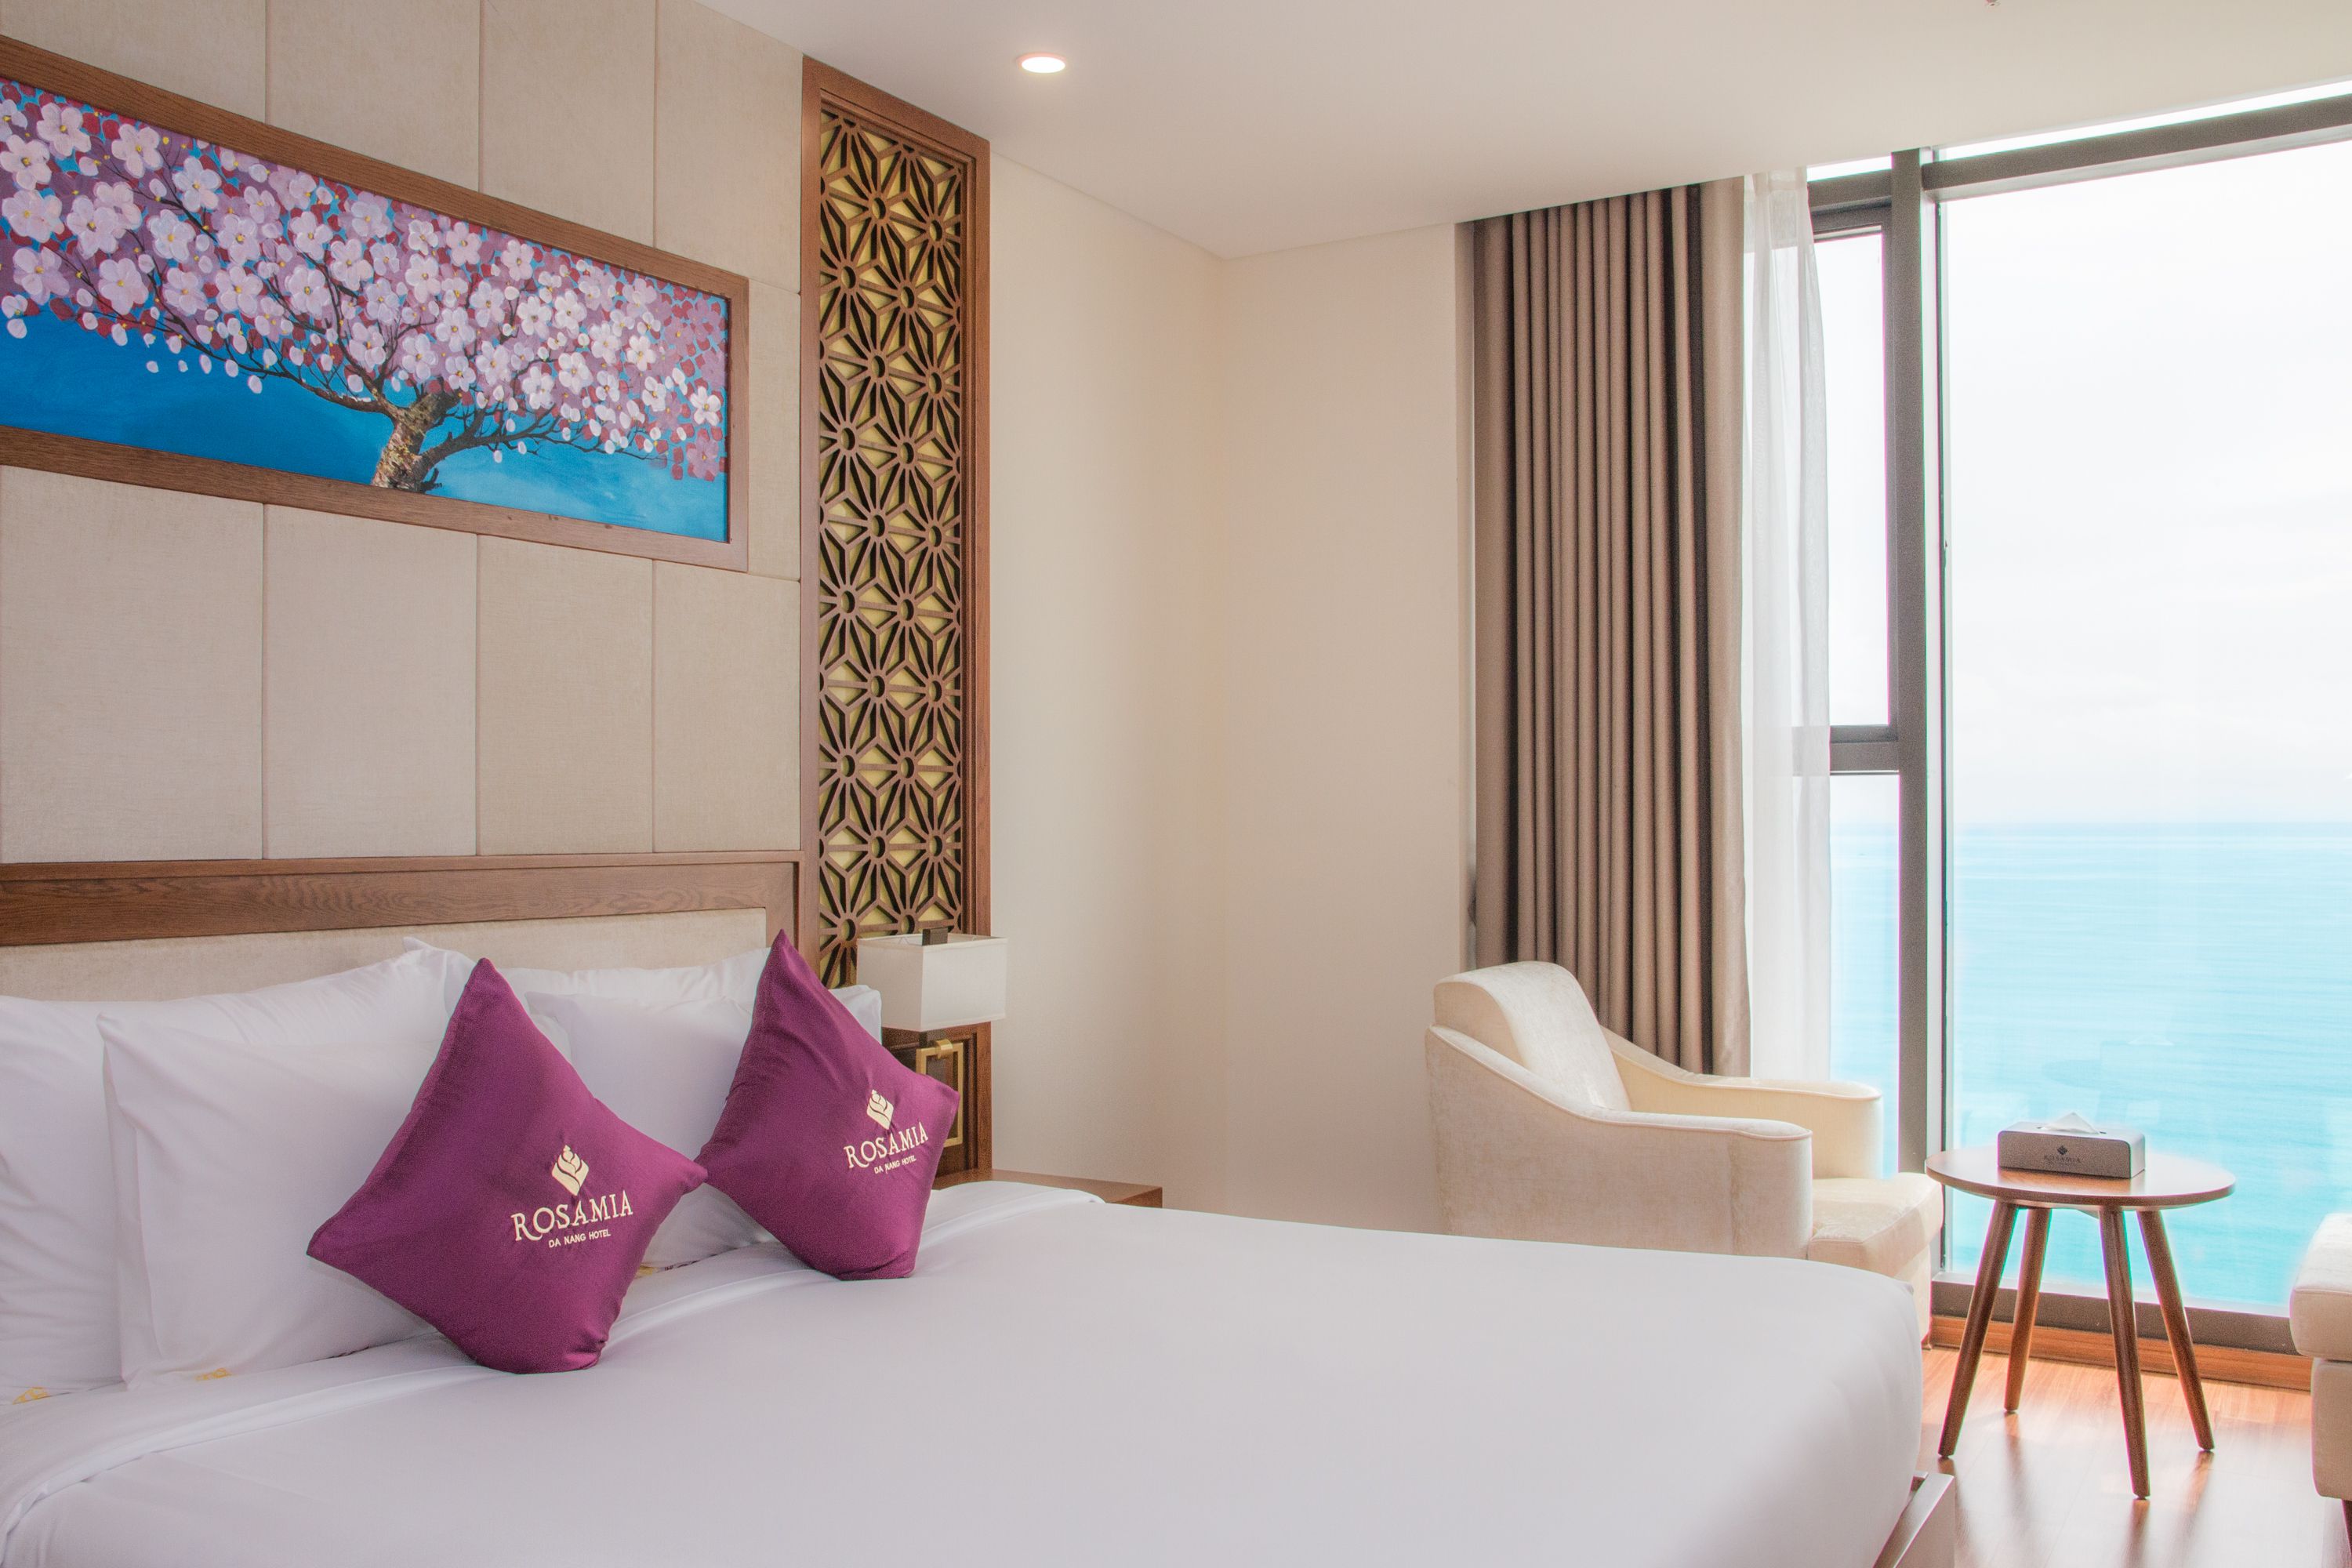 KHUYẾN MÃI LỚN CHÀO HÈ 2020 - XUA TAN NÓNG BỨC – TRỌN NIỀM VUI CÙNG KHÁCH SẠN DỊCH VỤ TIÊU CHUẨN 5 SAO Rosamia Da Nang Hotel